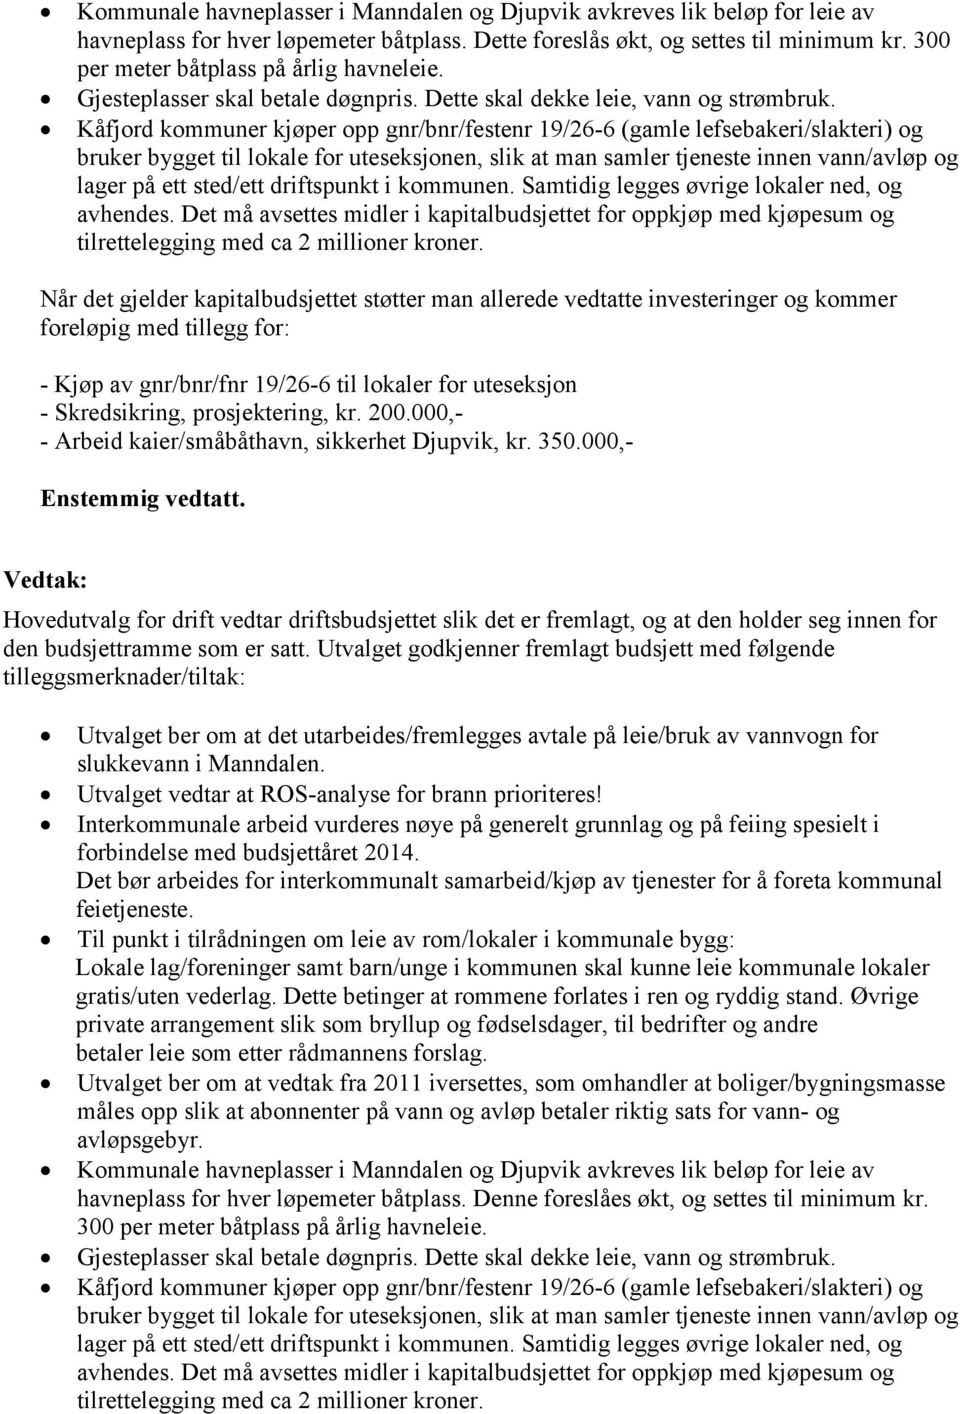 Kåfjord kommuner kjøper opp gnr/bnr/festenr 19/26-6 (gamle lefsebakeri/slakteri) og bruker bygget til lokale for uteseksjonen, slik at man samler tjeneste innen vann/avløp og lager på ett sted/ett